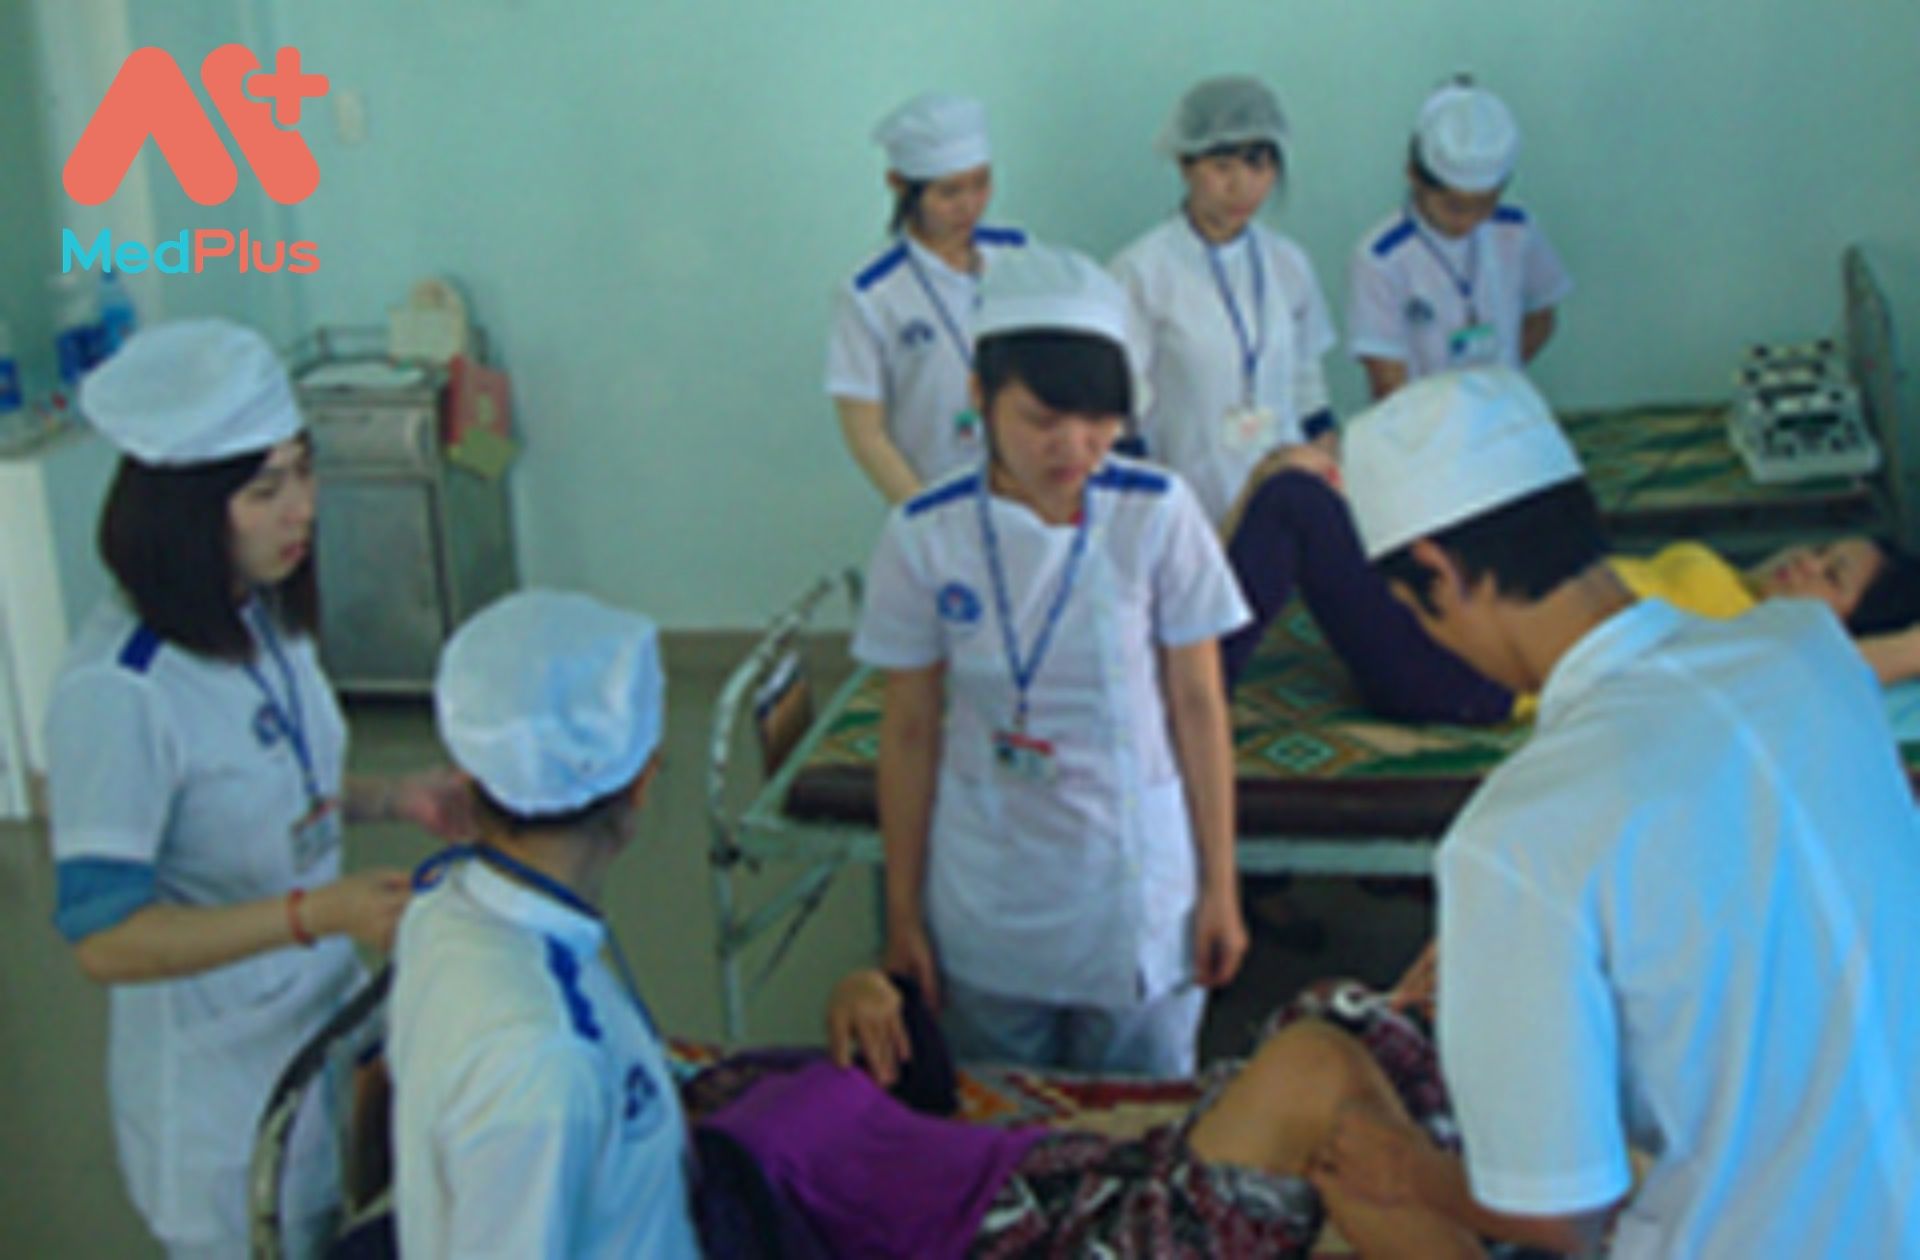 Trung tâm y tế quận Thanh Khê 